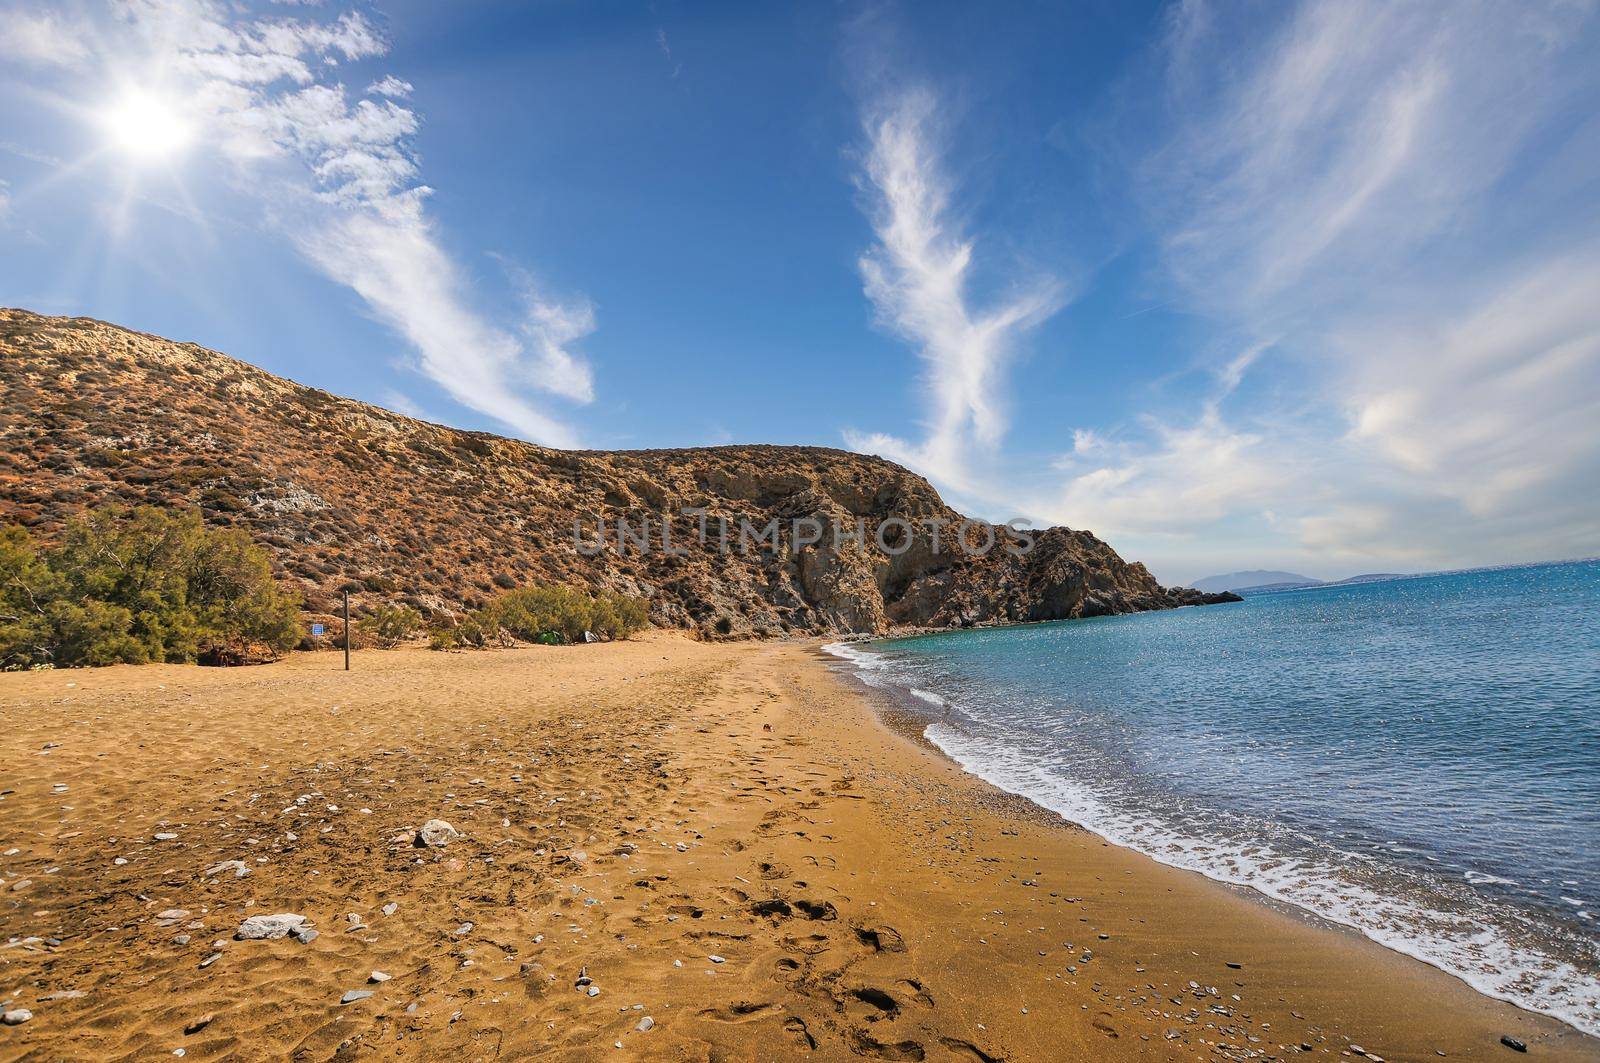 Klisidi beach in Anafi island of Greece by feelmytravel